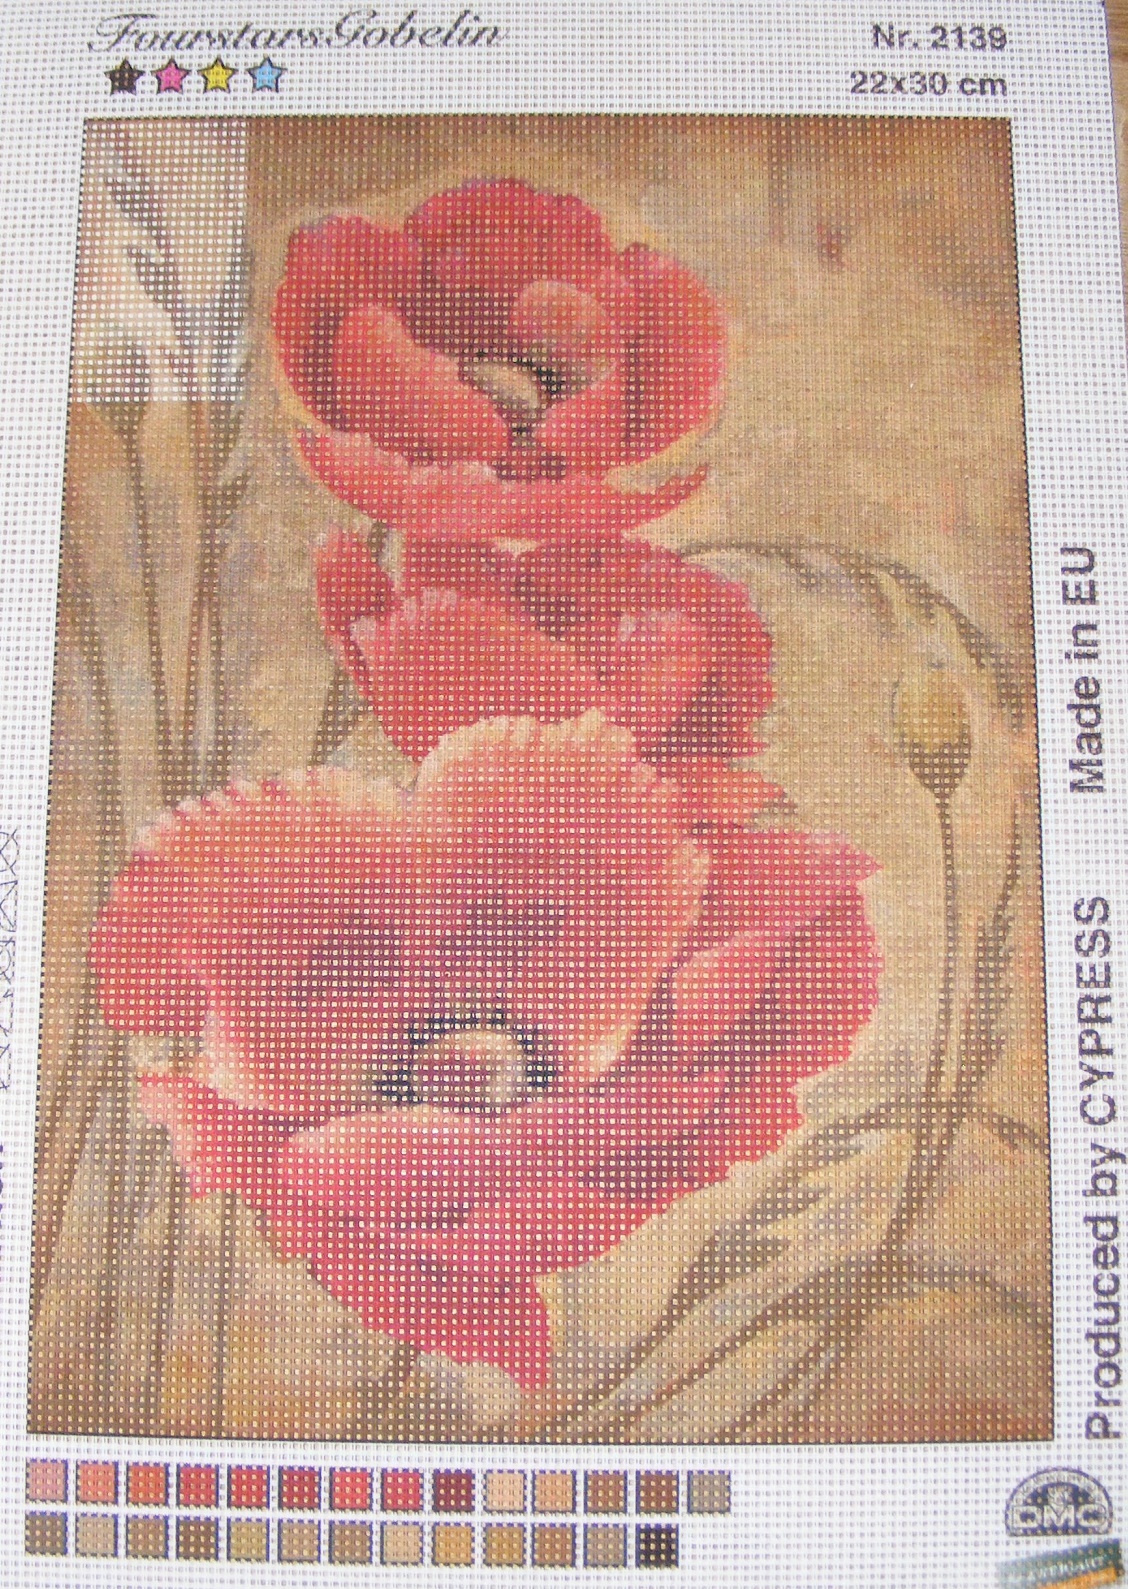 Gobelin 22x30 cm - Virág 2139